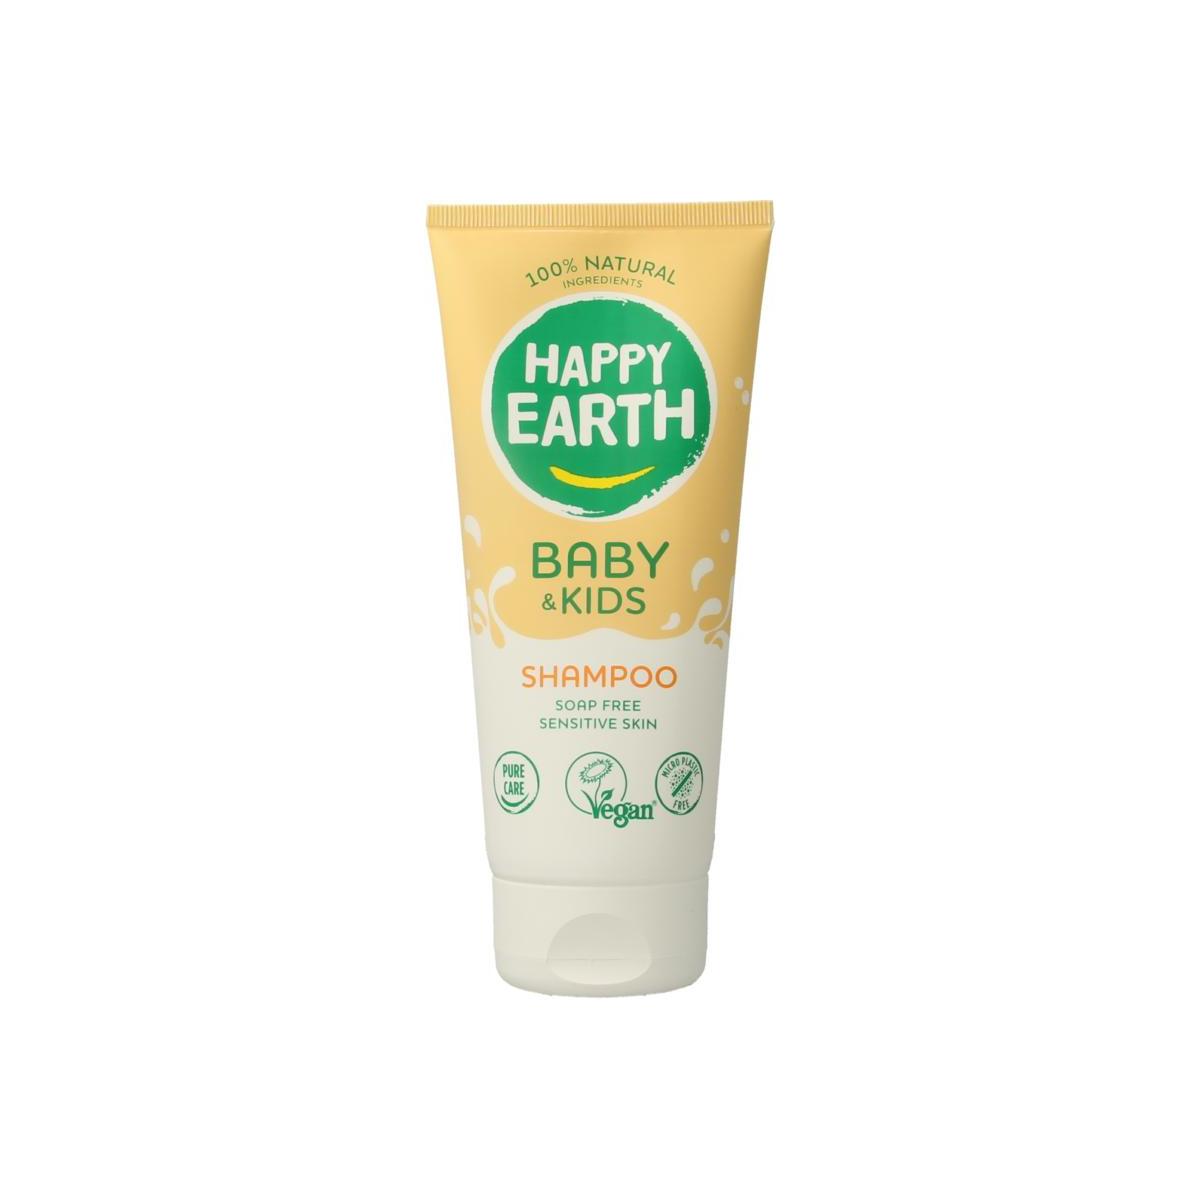 Shampoo voor baby & kids